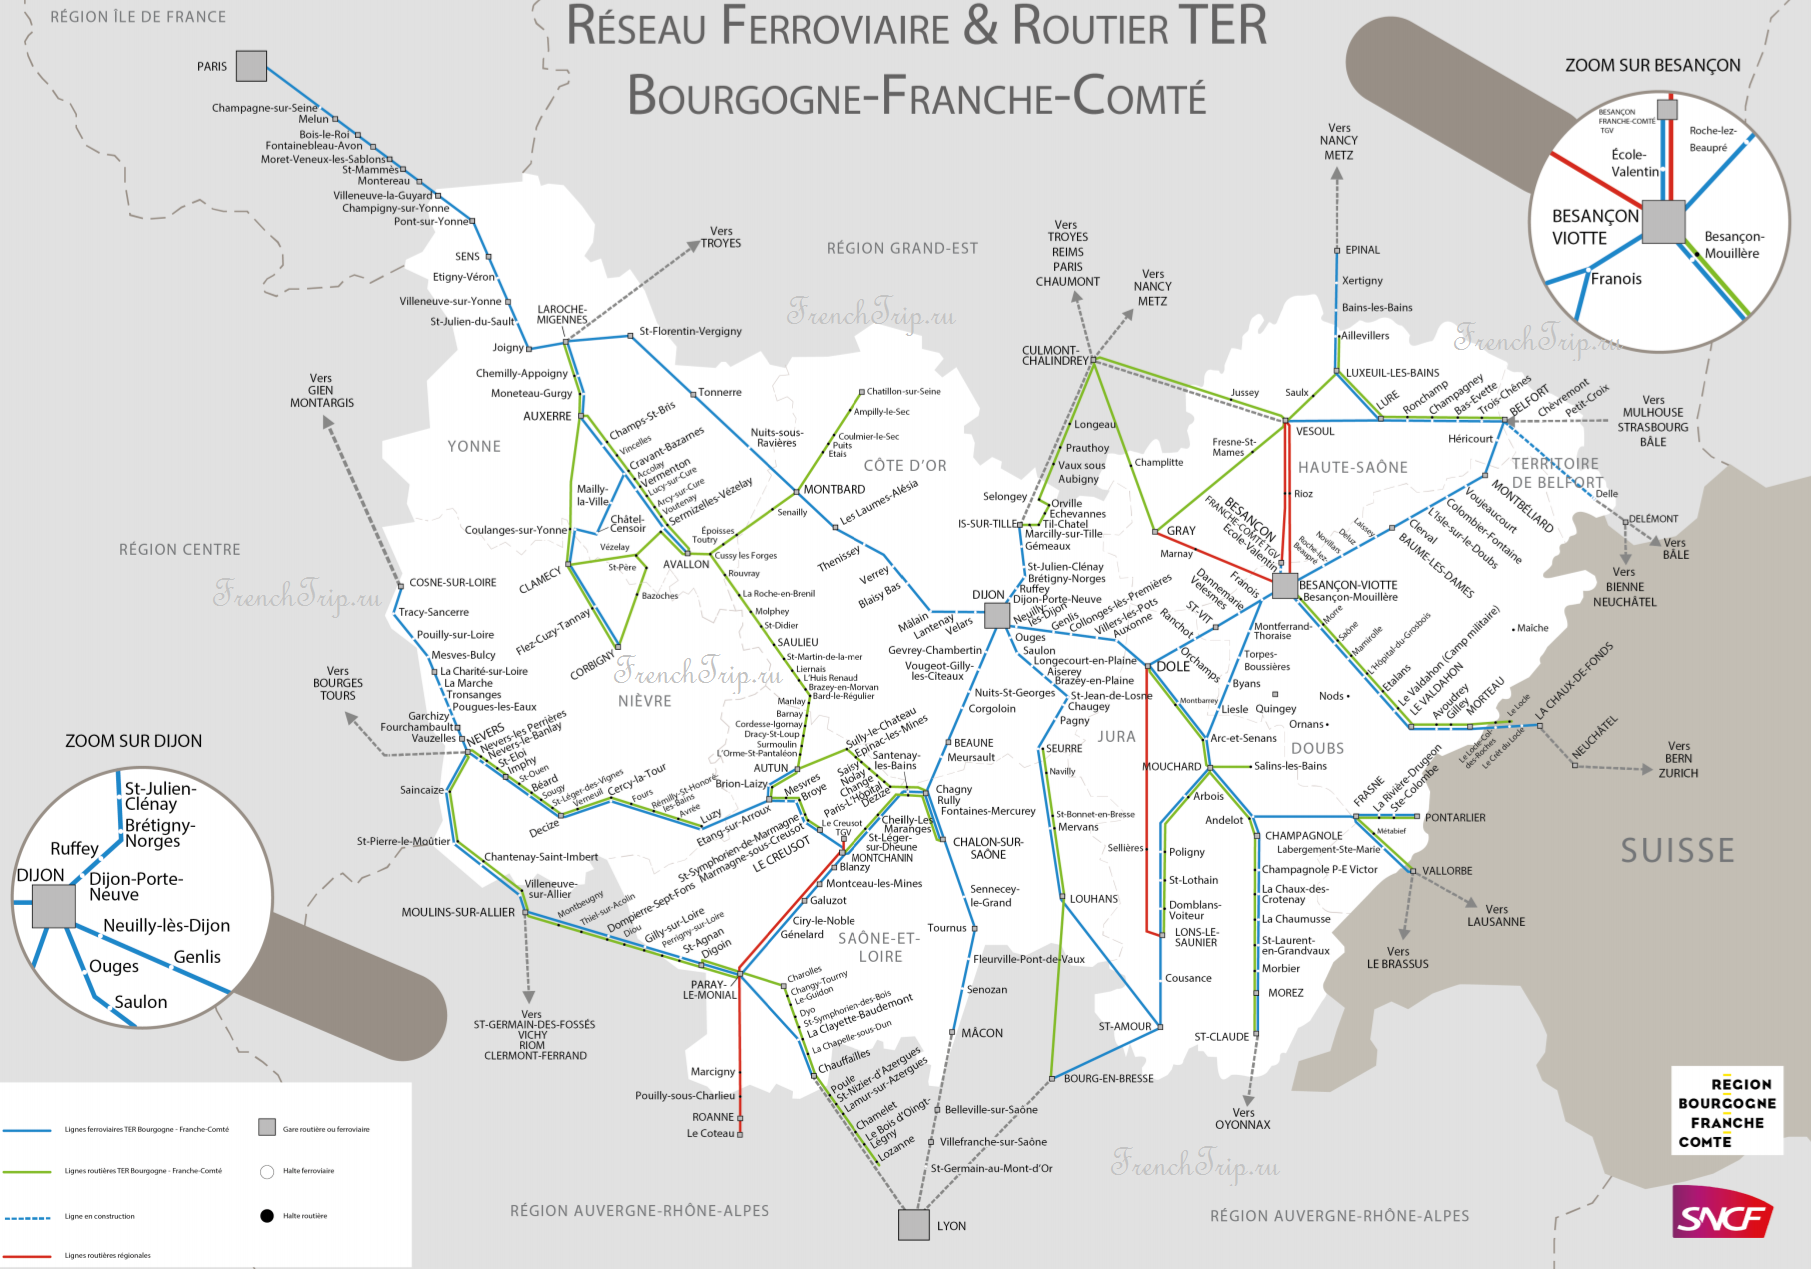 Схема региональных поездов по Franche-Comté (Франш-Конте)